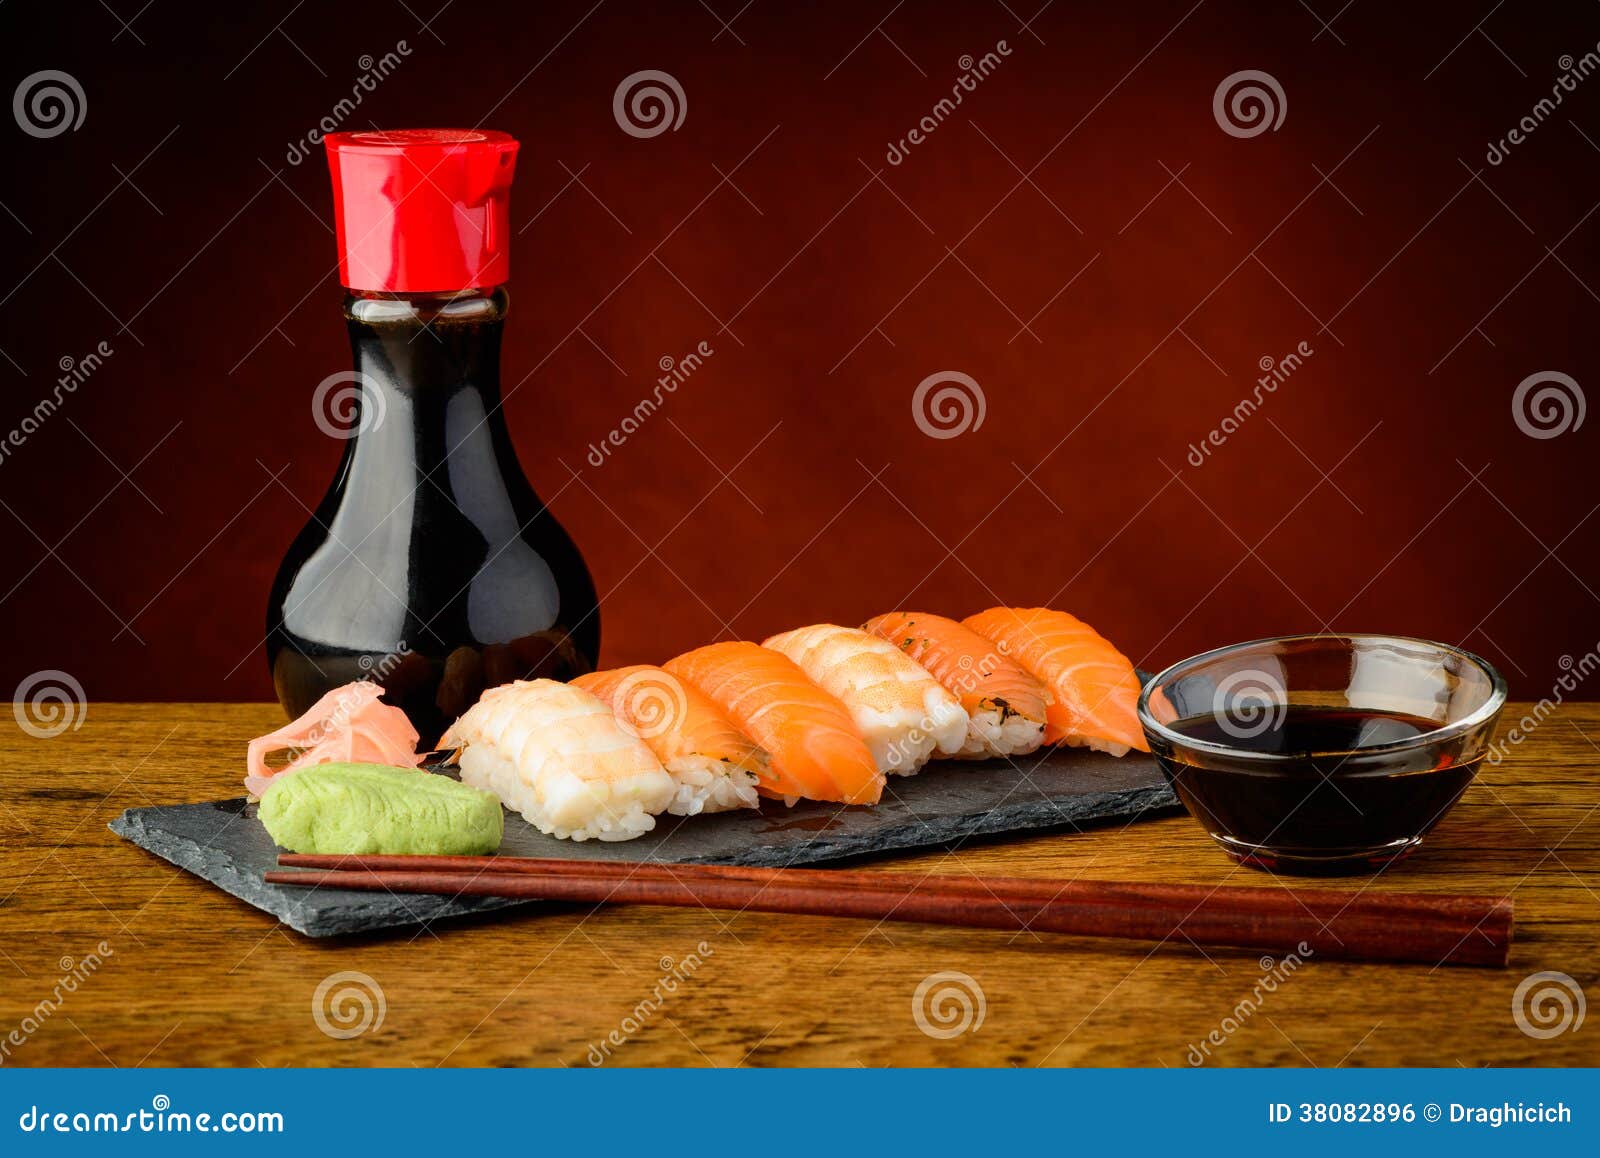 Plat mélangé avec des sushi de nigiri. La vie toujours du plat mélangé avec les sushi de nigiri, la sauce de soja et les baguettes